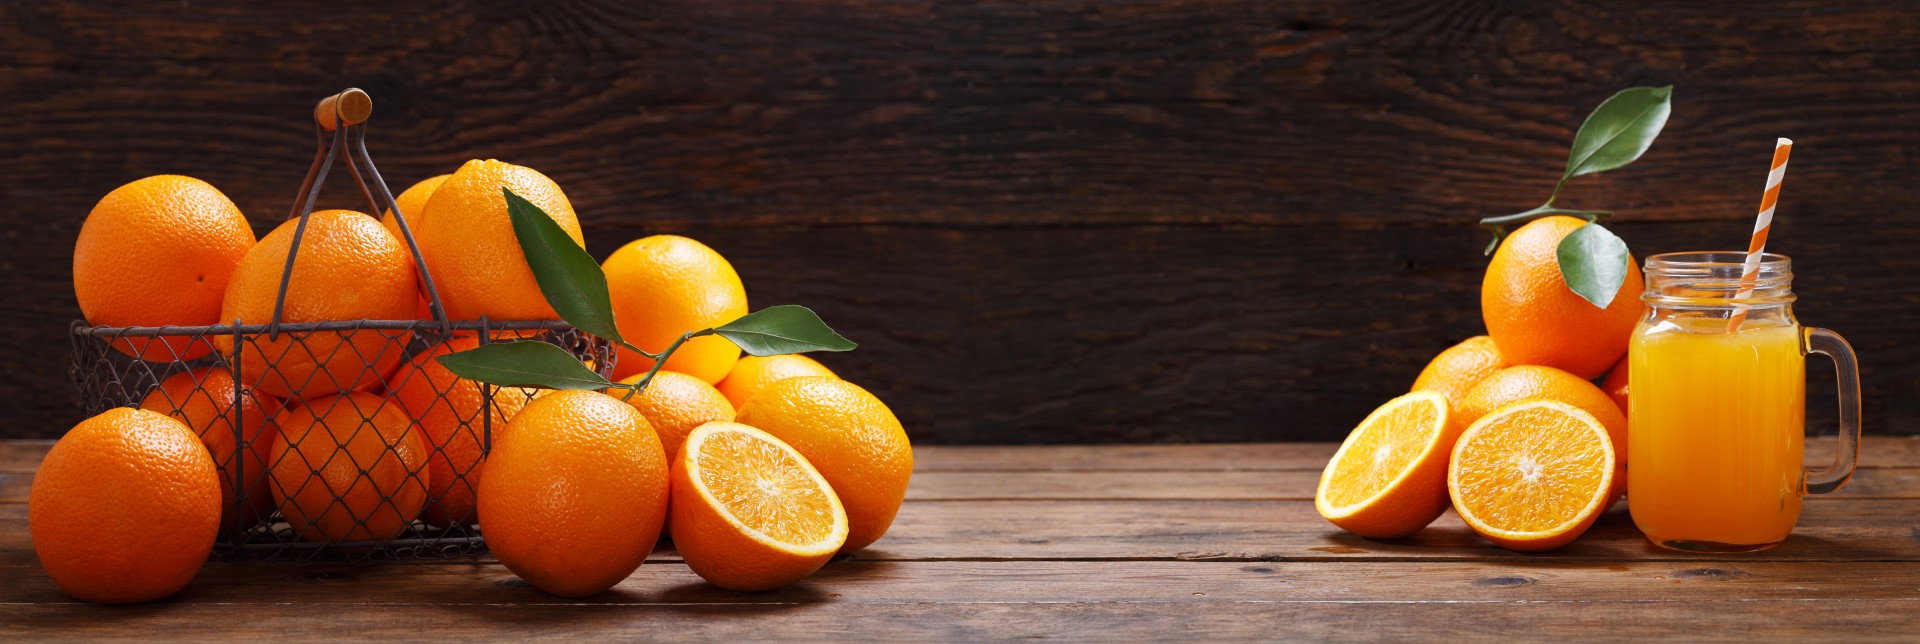 Izbrani okus sezone- pomaranče